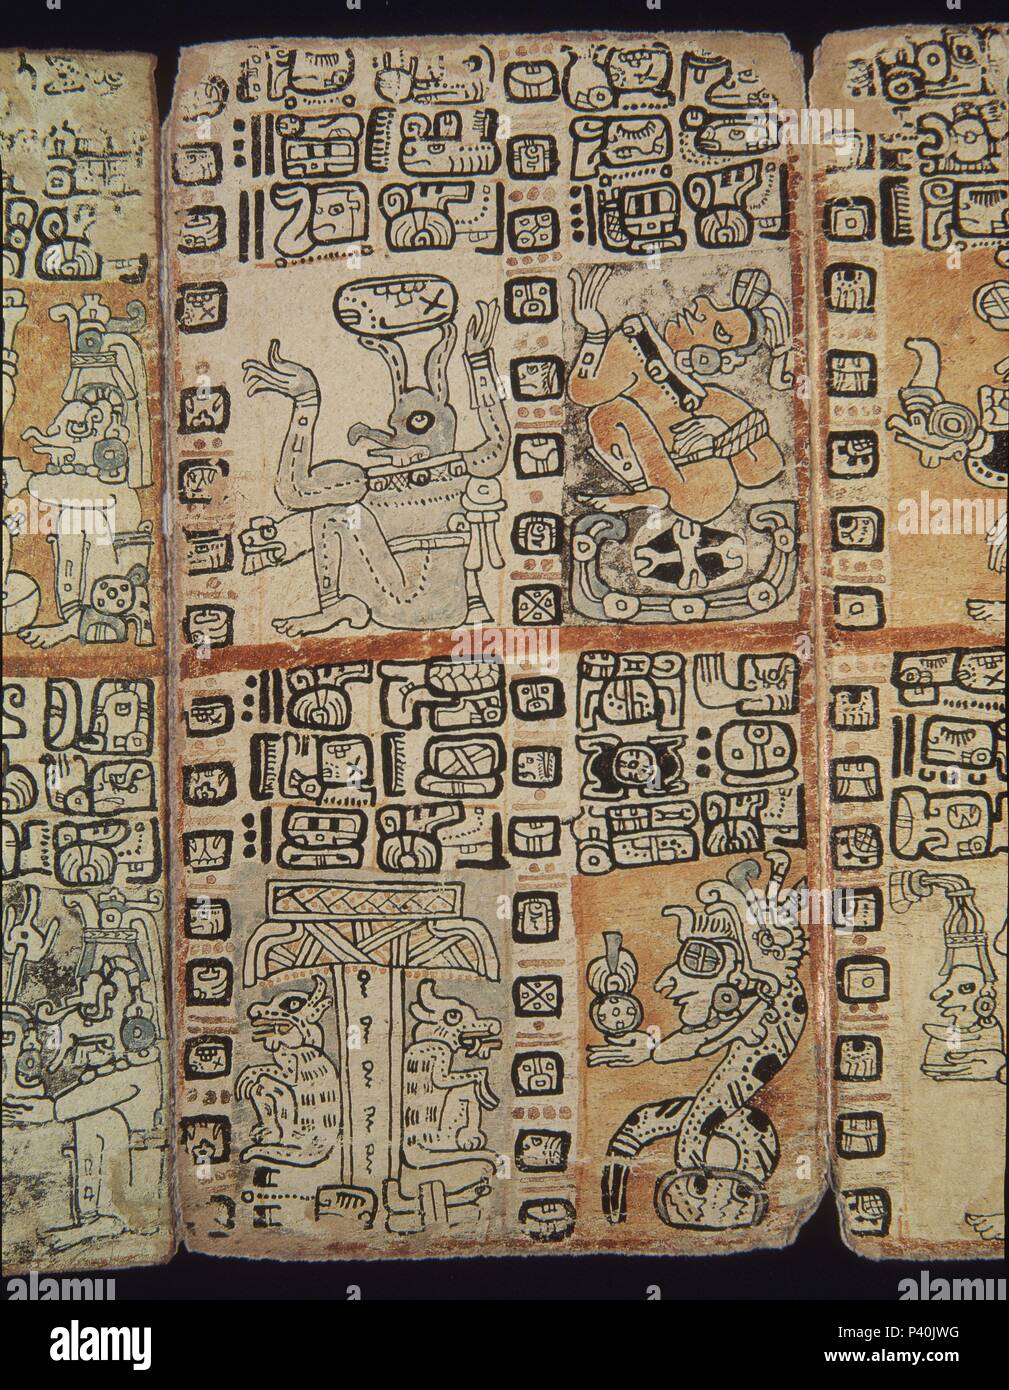 Faksimile. Seite des Codex Tro-Cortesianus. Maya Kultur. Männer und Götter. 13. und 15. Jahrhundert. Madrid, Museum von Amerika. Lage: das Museo DE AMERICA - COLECCION, MADRID, SPANIEN. Stockfoto